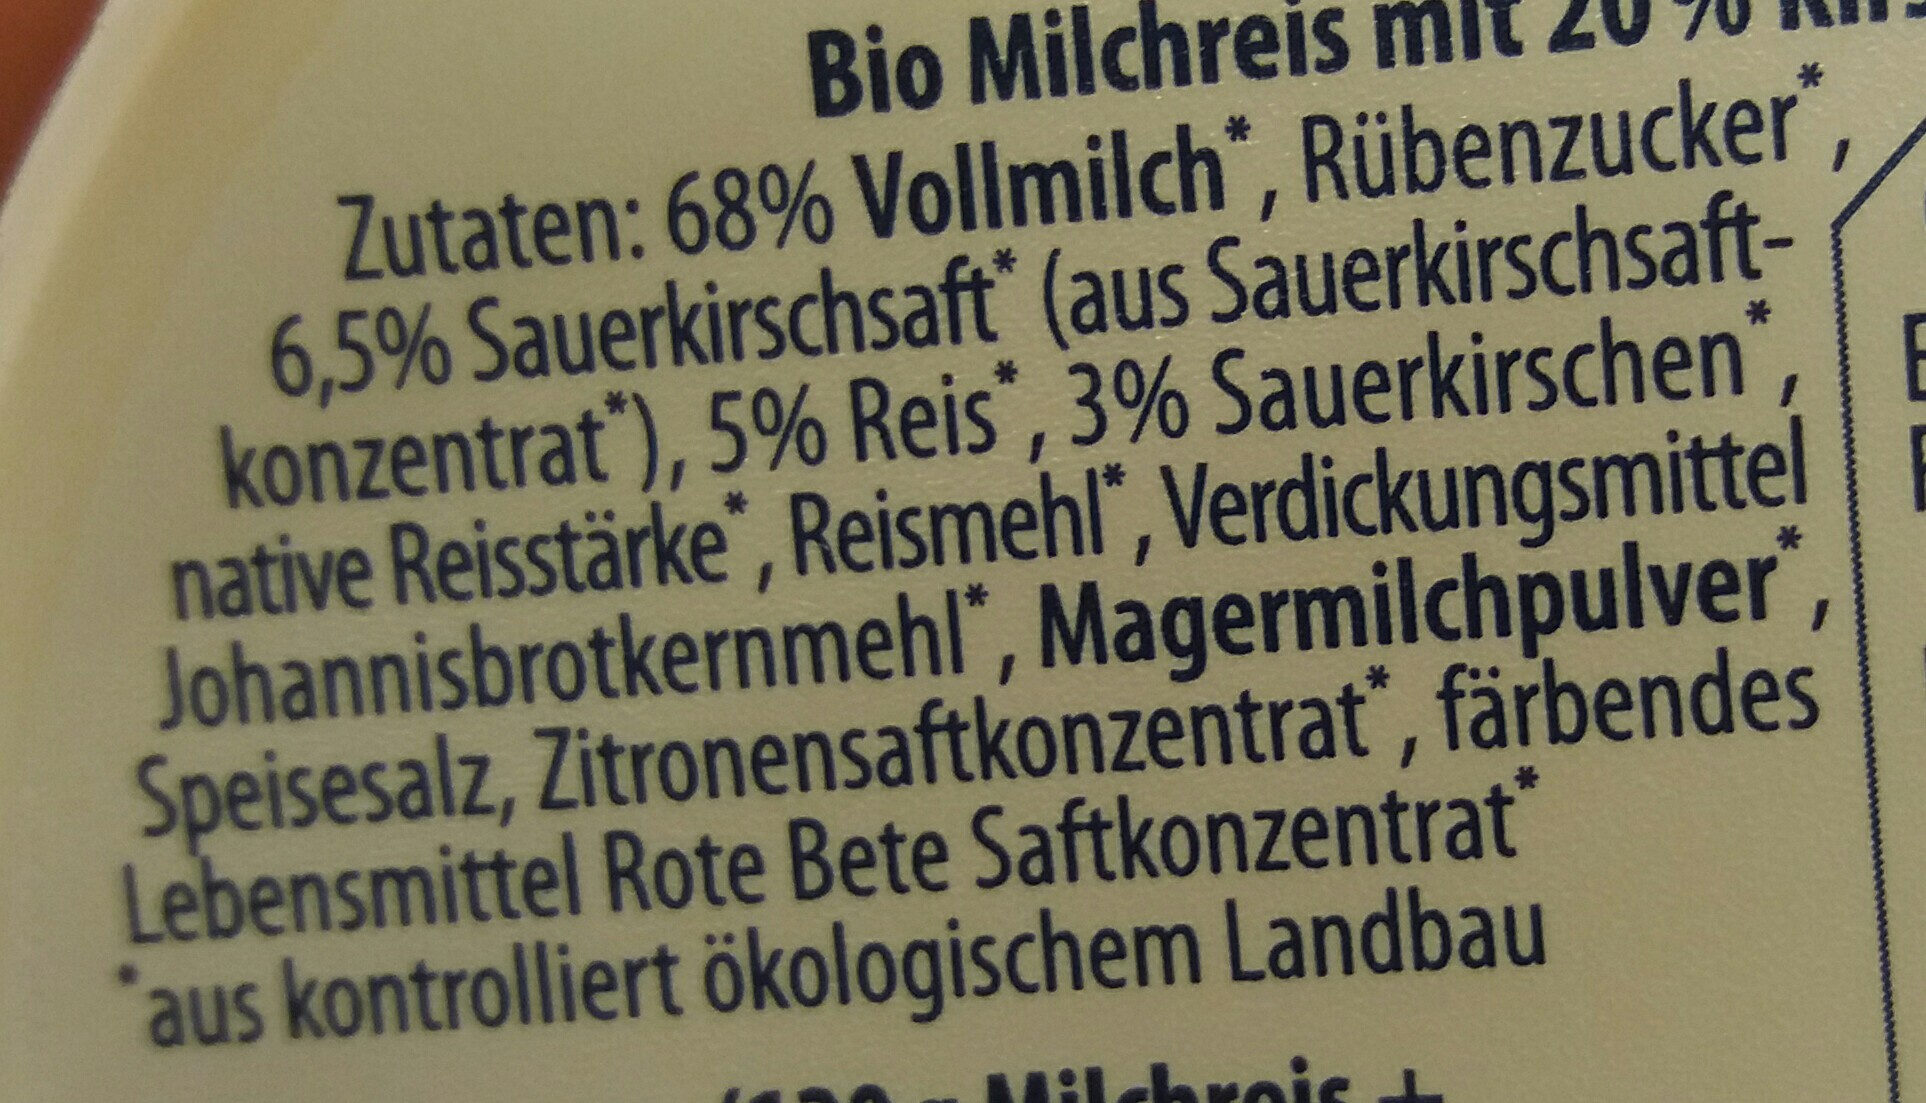 Milchreis Kirsche - Ingredientes - fr